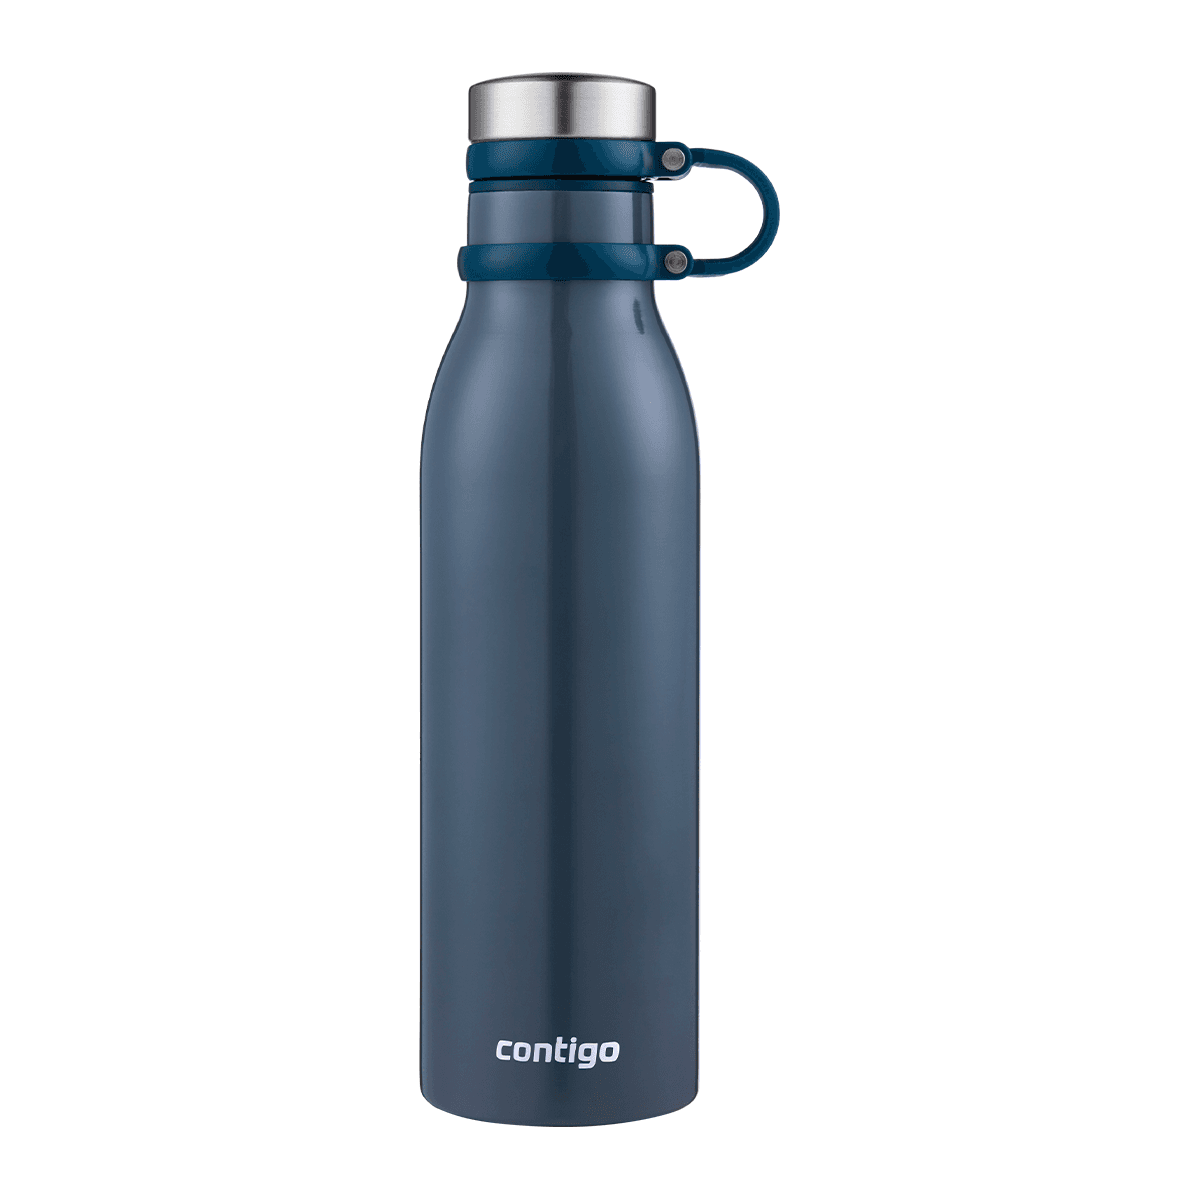 زجاجة ماء حافظة للحرارة 590 مل ستانلس ستيل توت كونتيجو Contigo Blueberry Matterhorn Vacuum Insulated Bottle